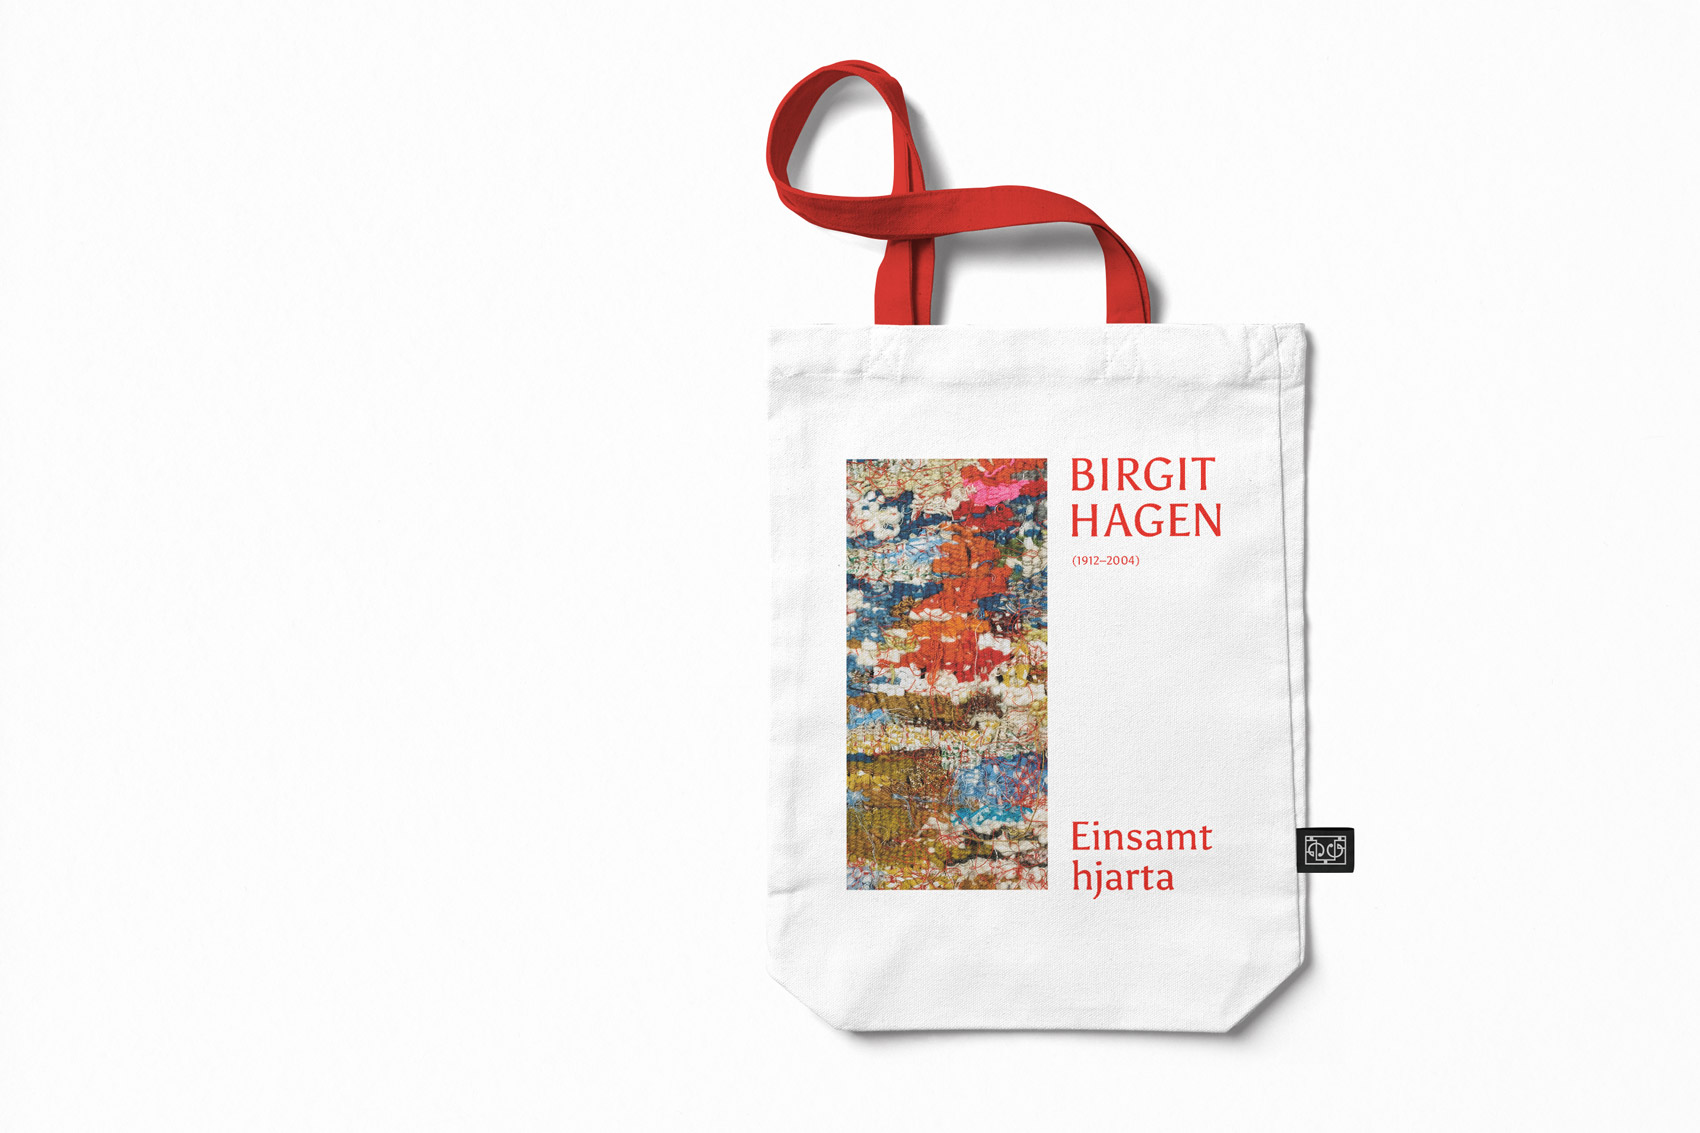 Visual identity for Birgit Hagen's exhibition - tote bag